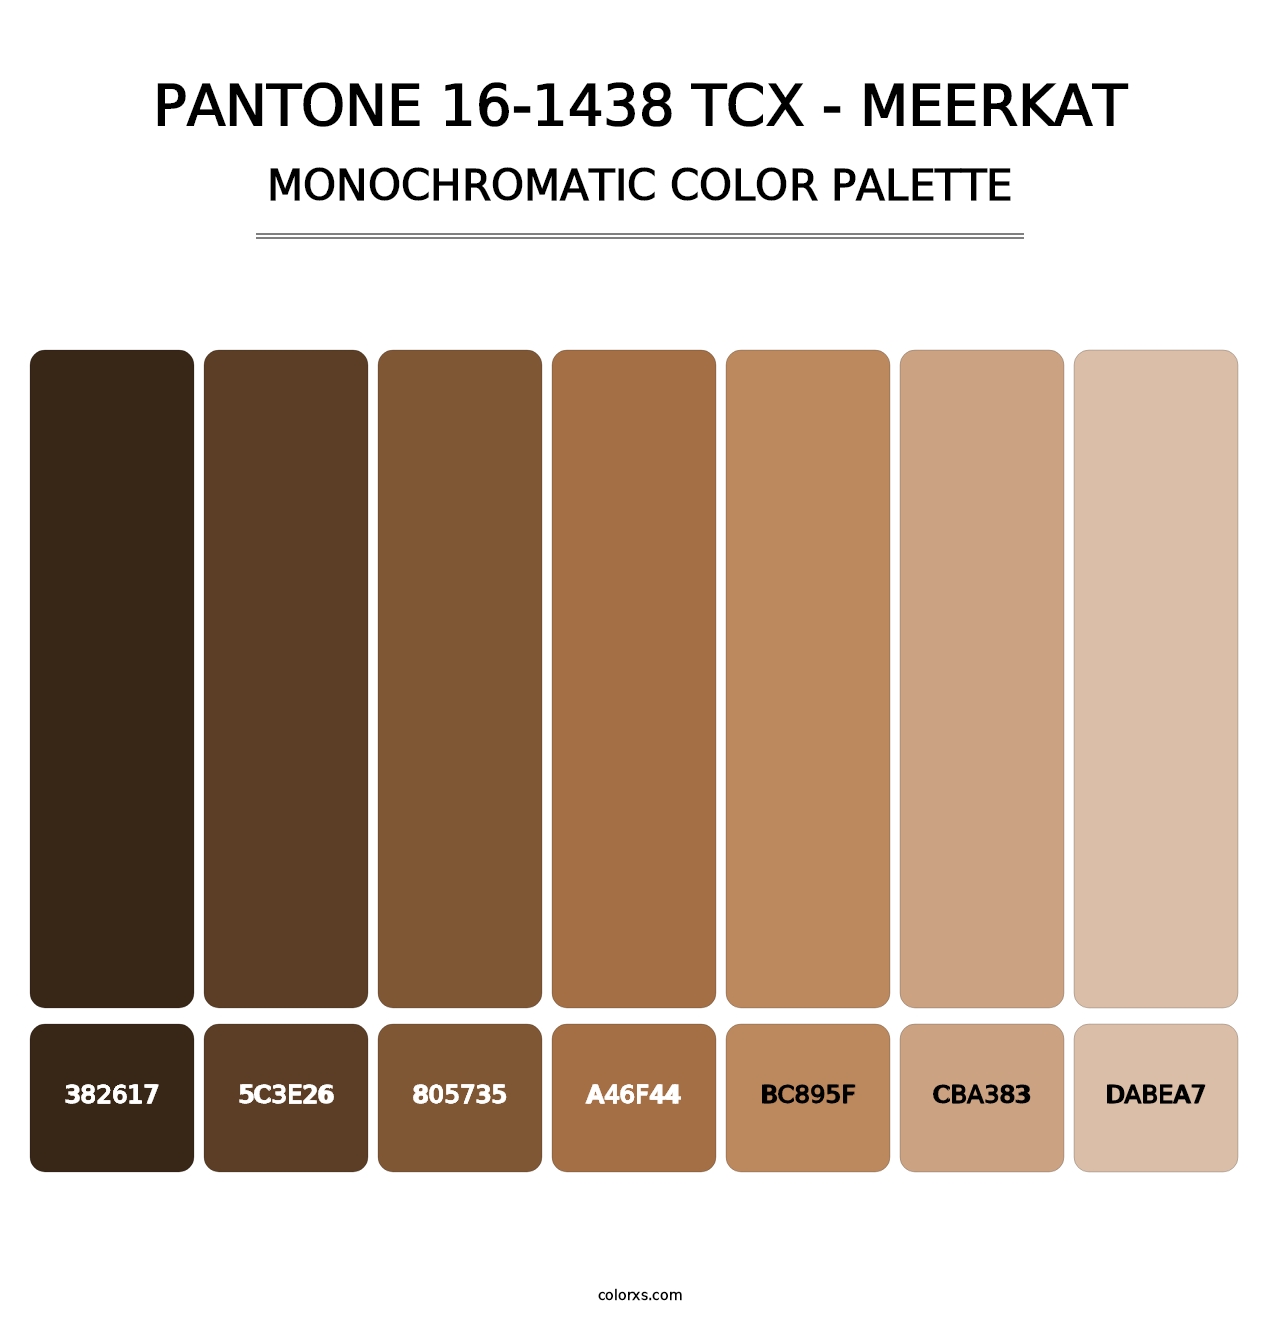 PANTONE 16-1438 TCX - Meerkat - Monochromatic Color Palette